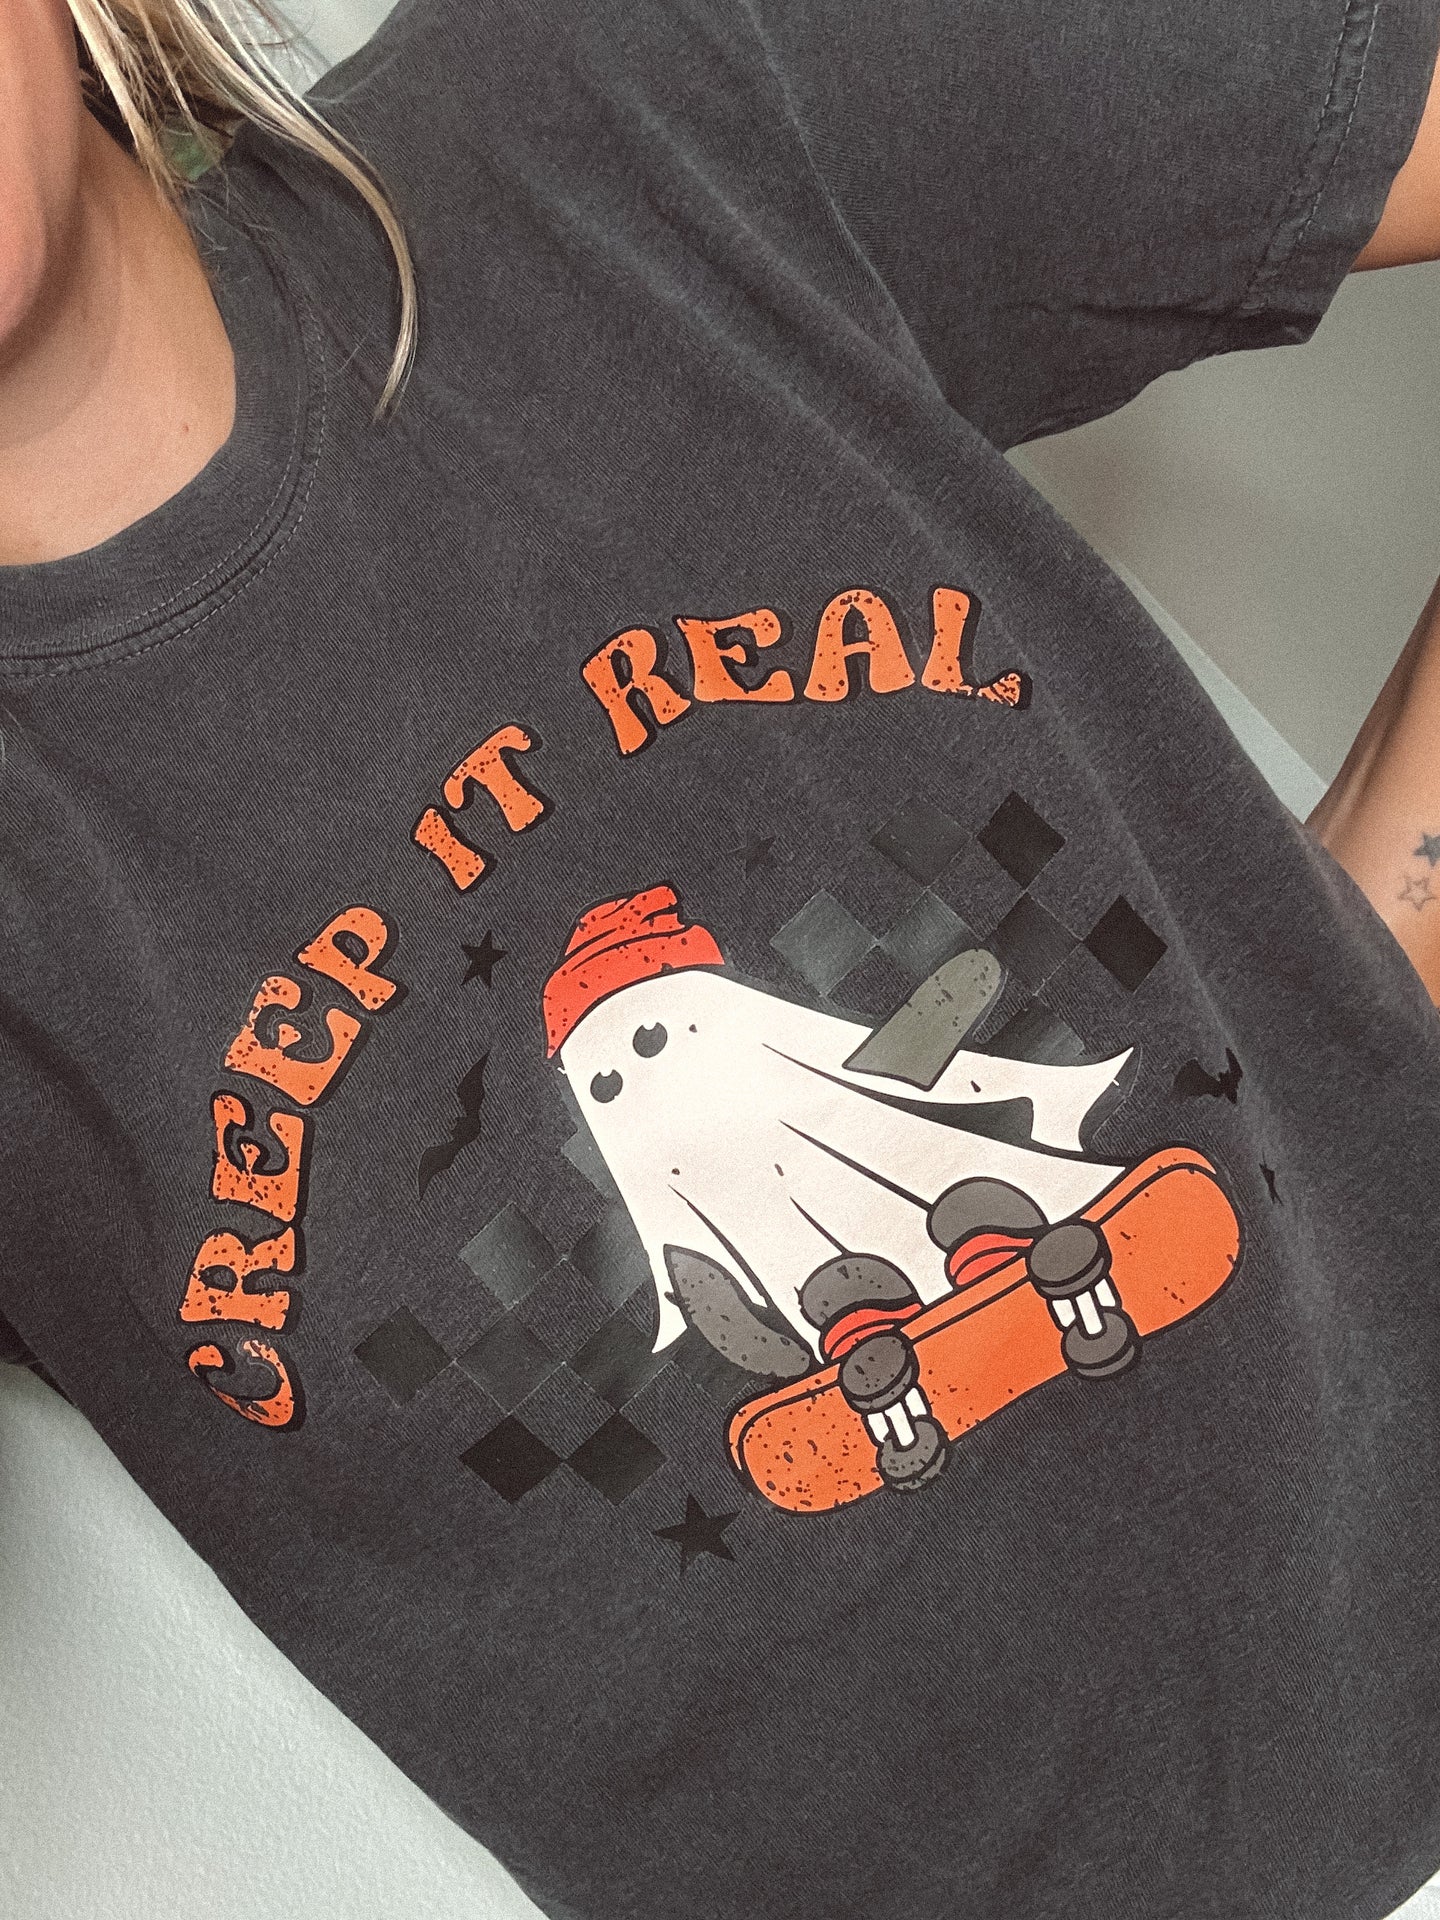 Creep It Real T-shirt